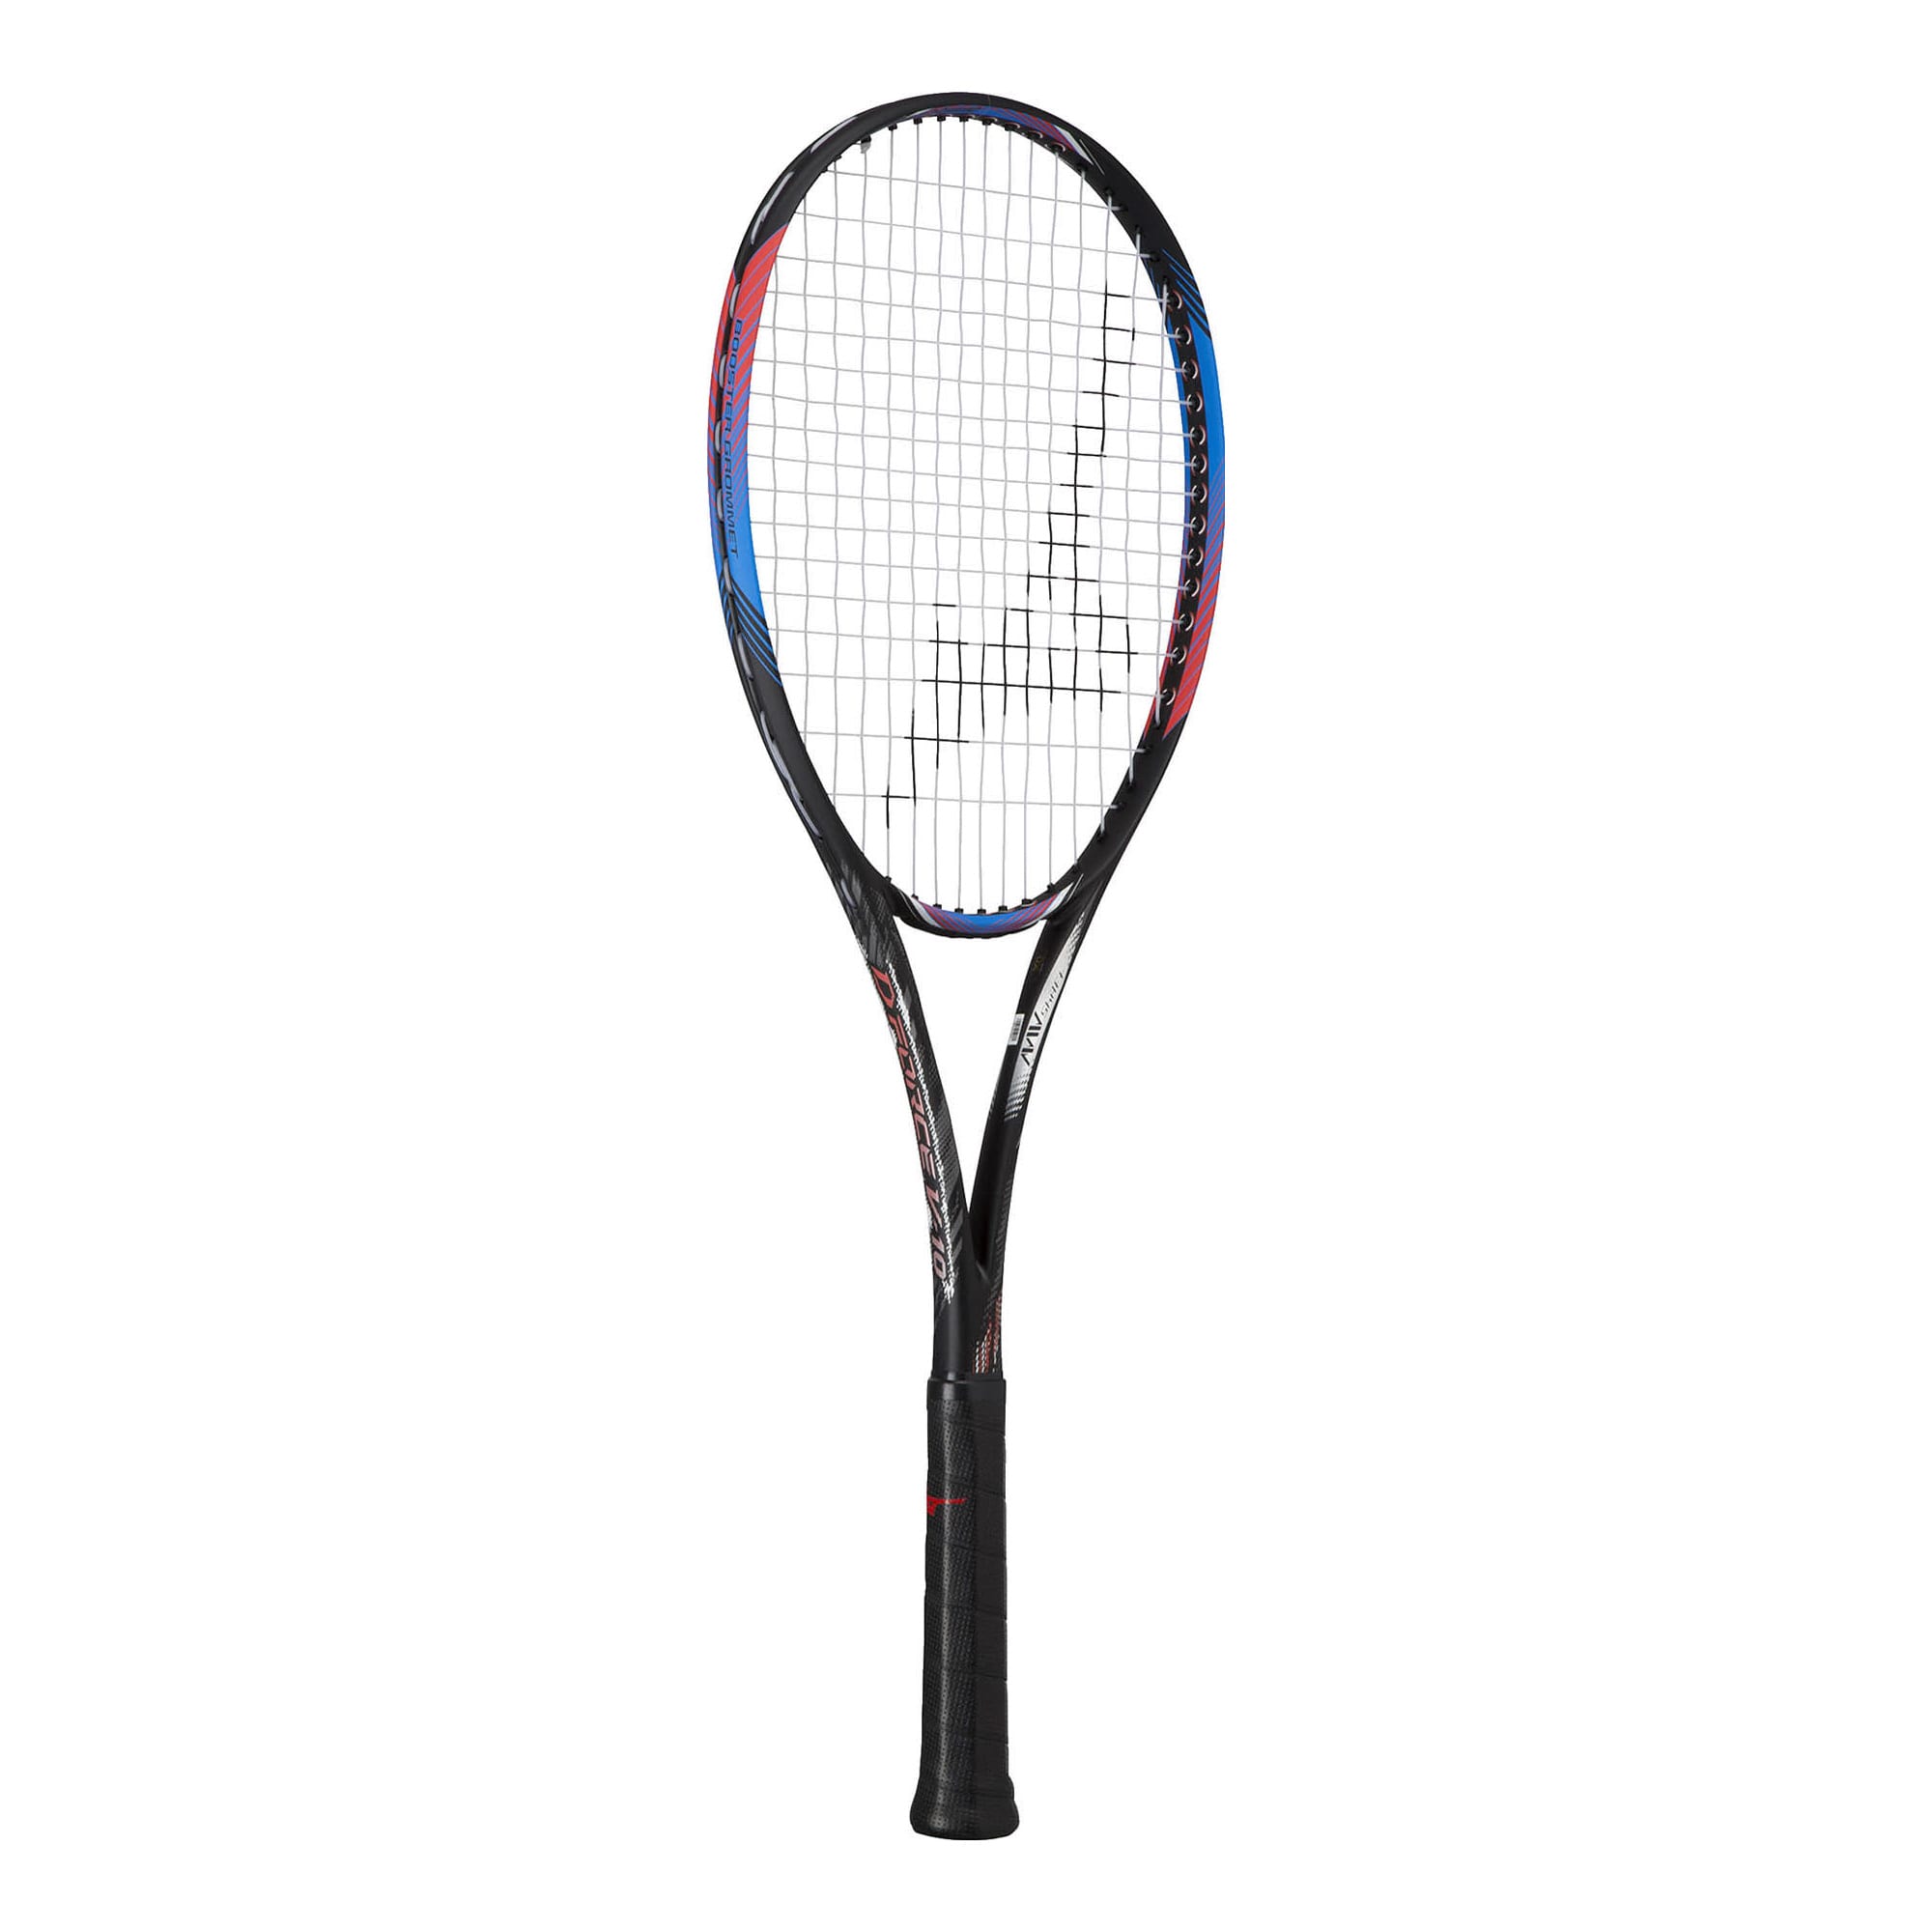 ディーフォース V10(ソフトテニス)|63JTN254|ソフトテニスラケット|テニス|ミズノ公式オンライン